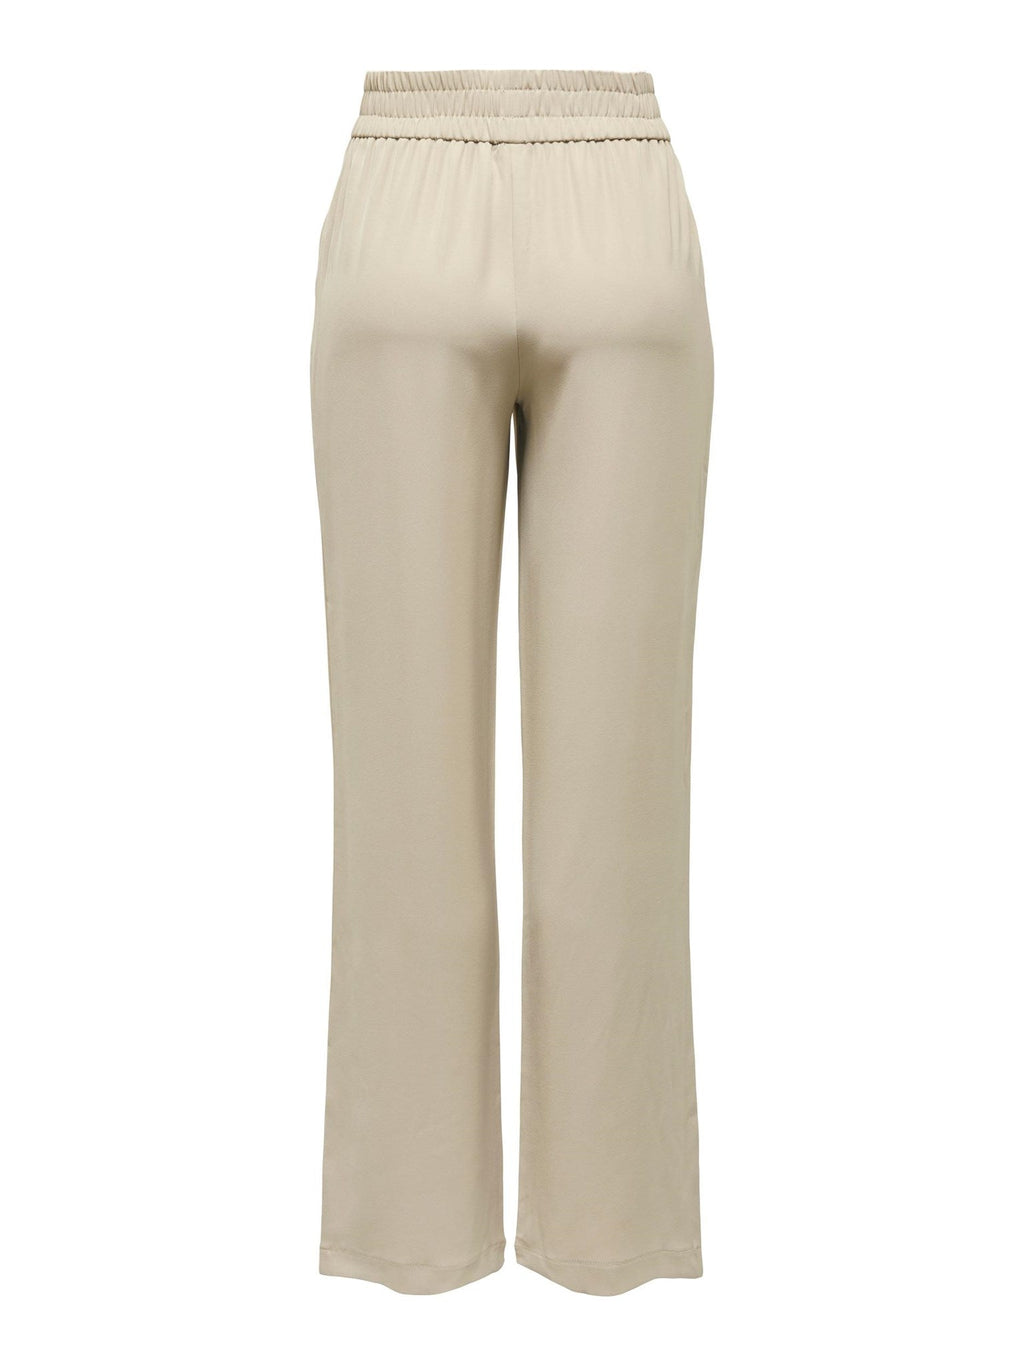 Pantalones anchos de Lucy -Laura - Oxford Tan